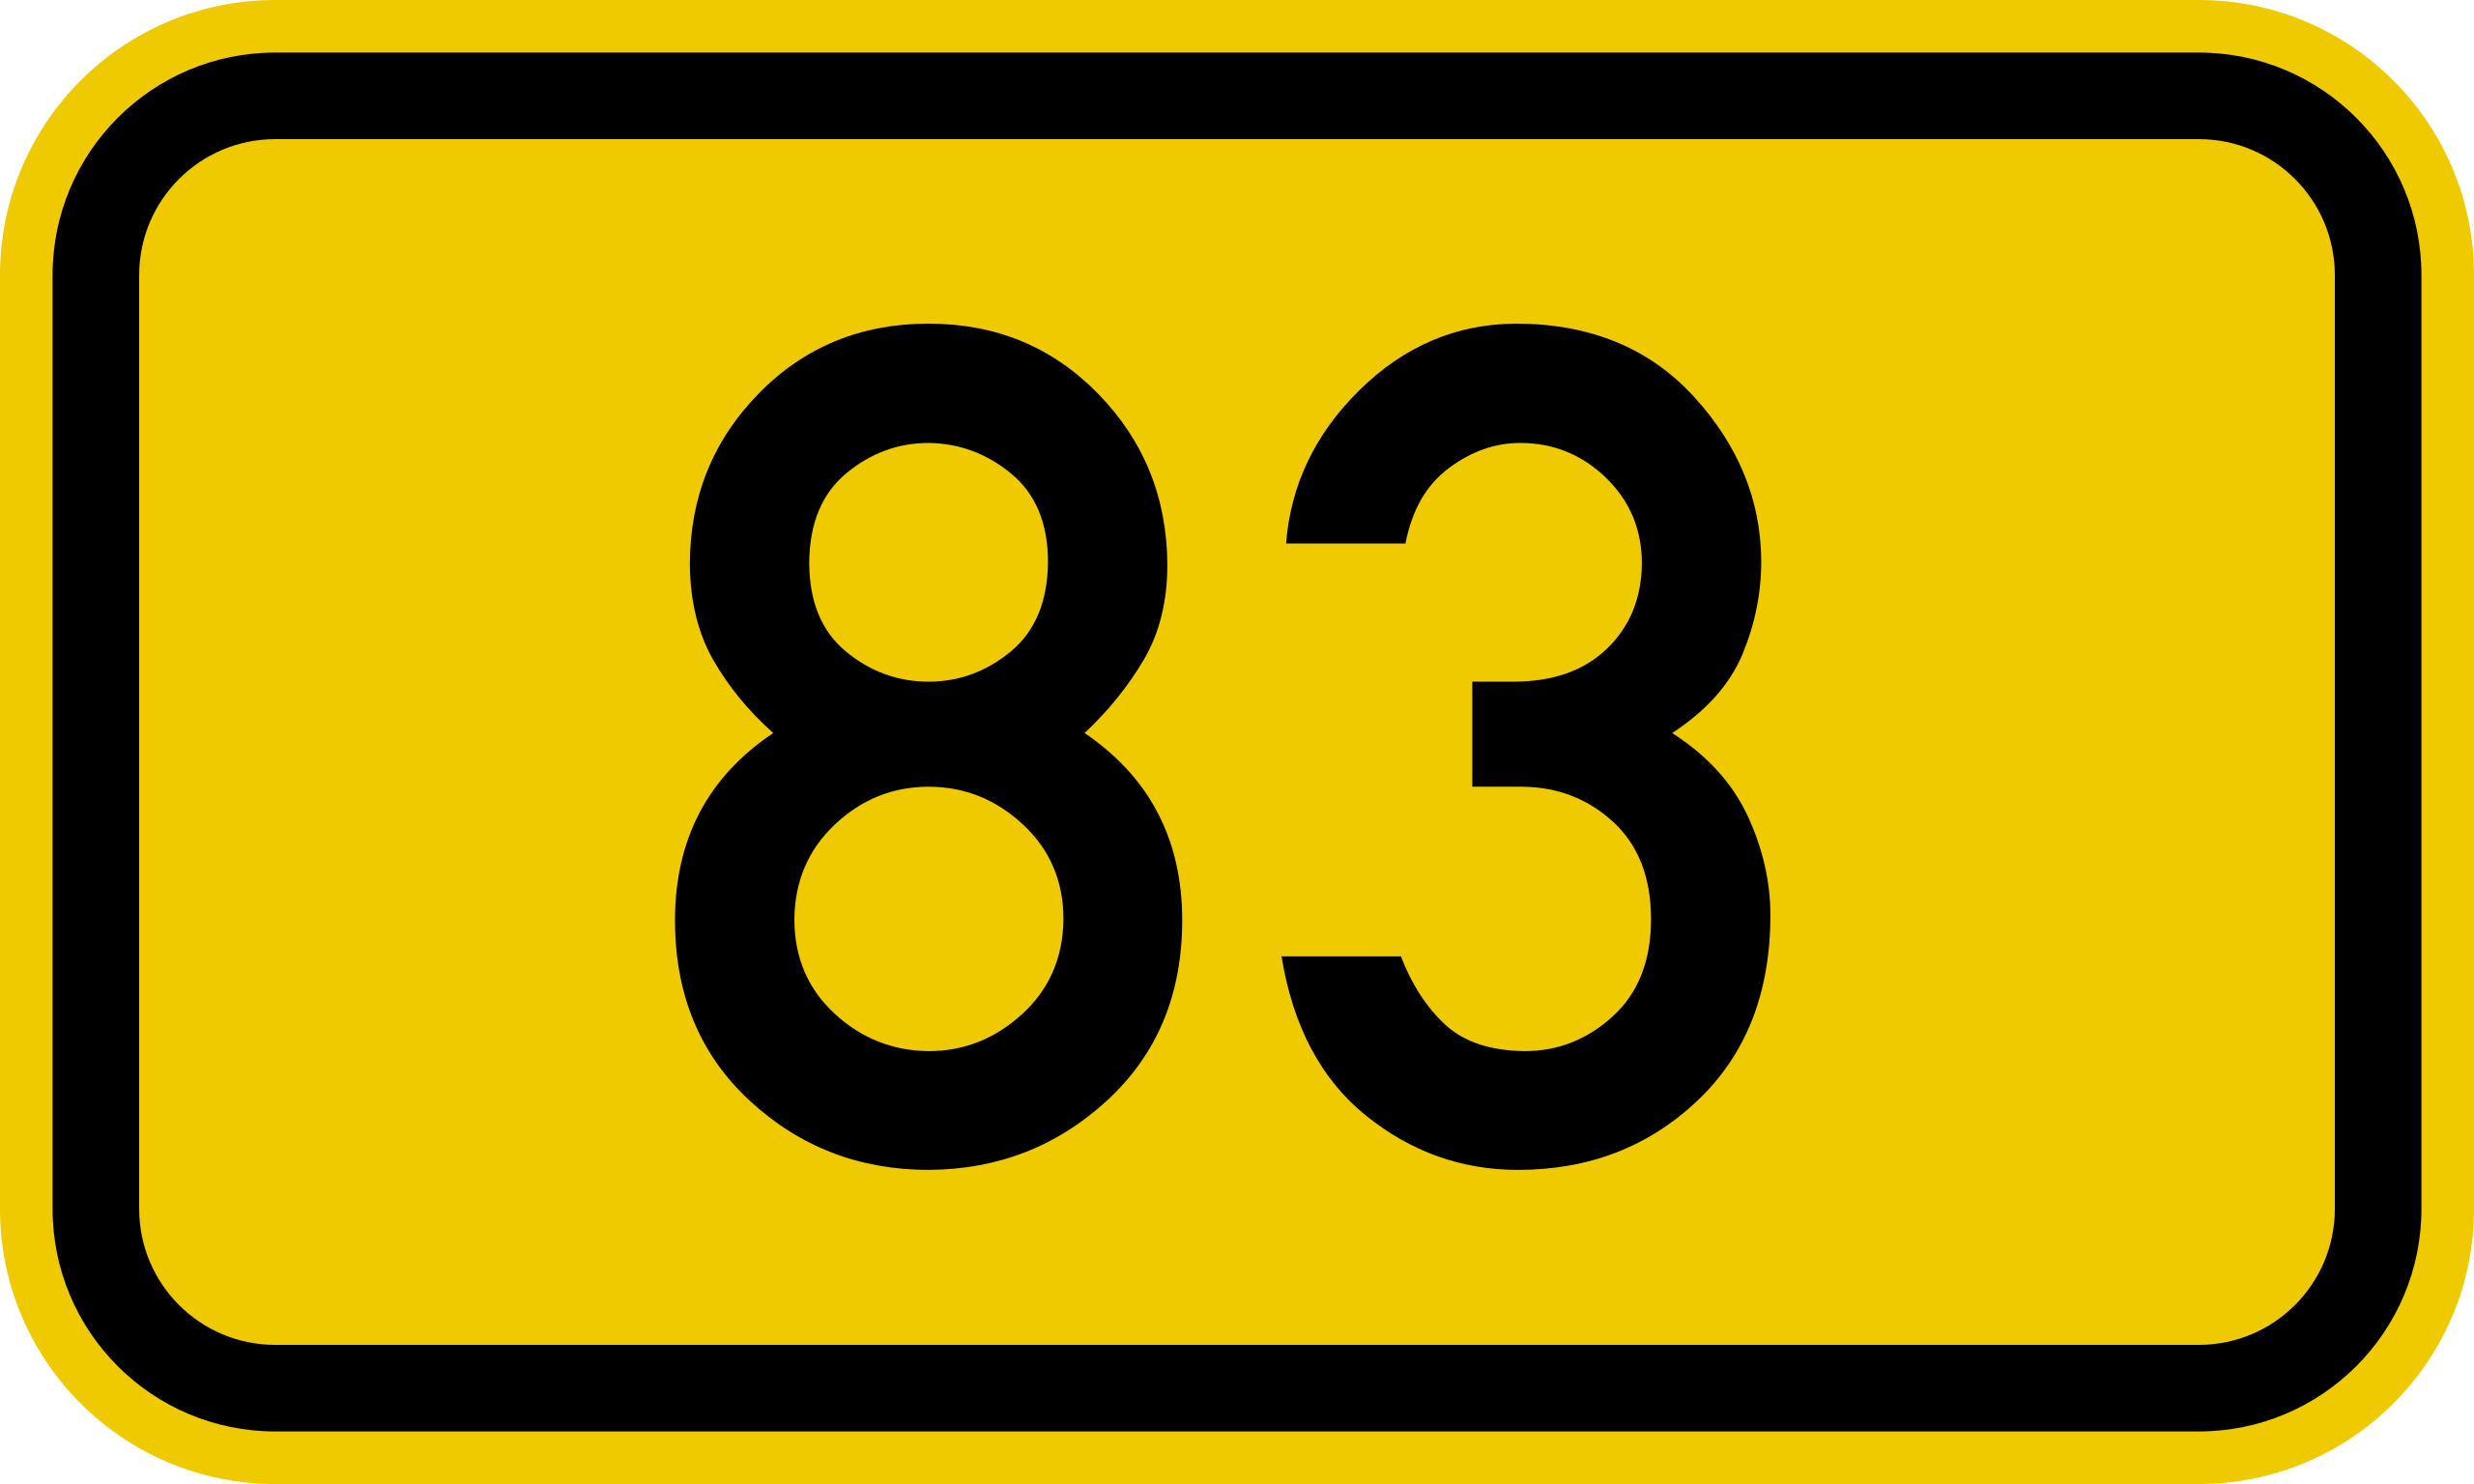 ファイル:Bundesstraße 83 number.svg - Wikipedia